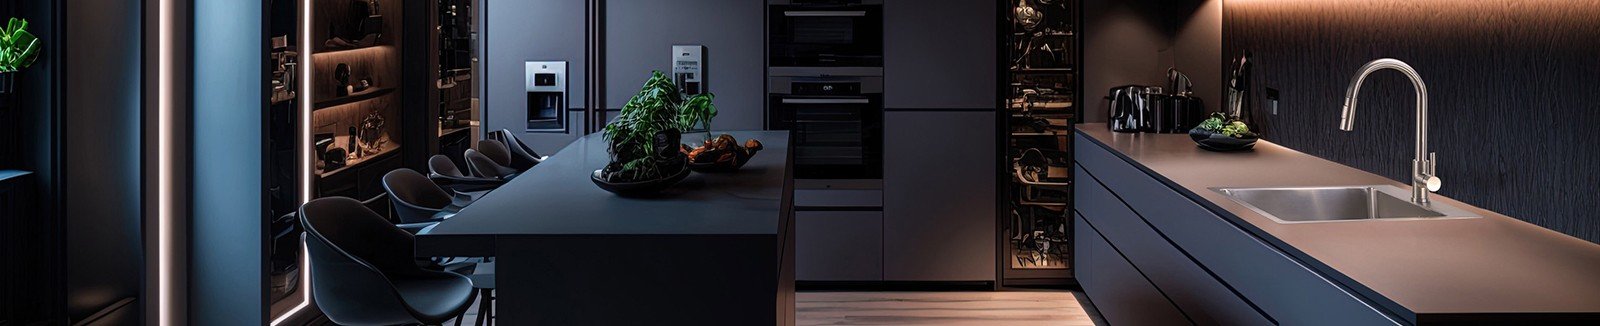 EDIERK - Stilvolle Lösungen für Küche und Bad - Qualität, die sich sehen lassen kann!